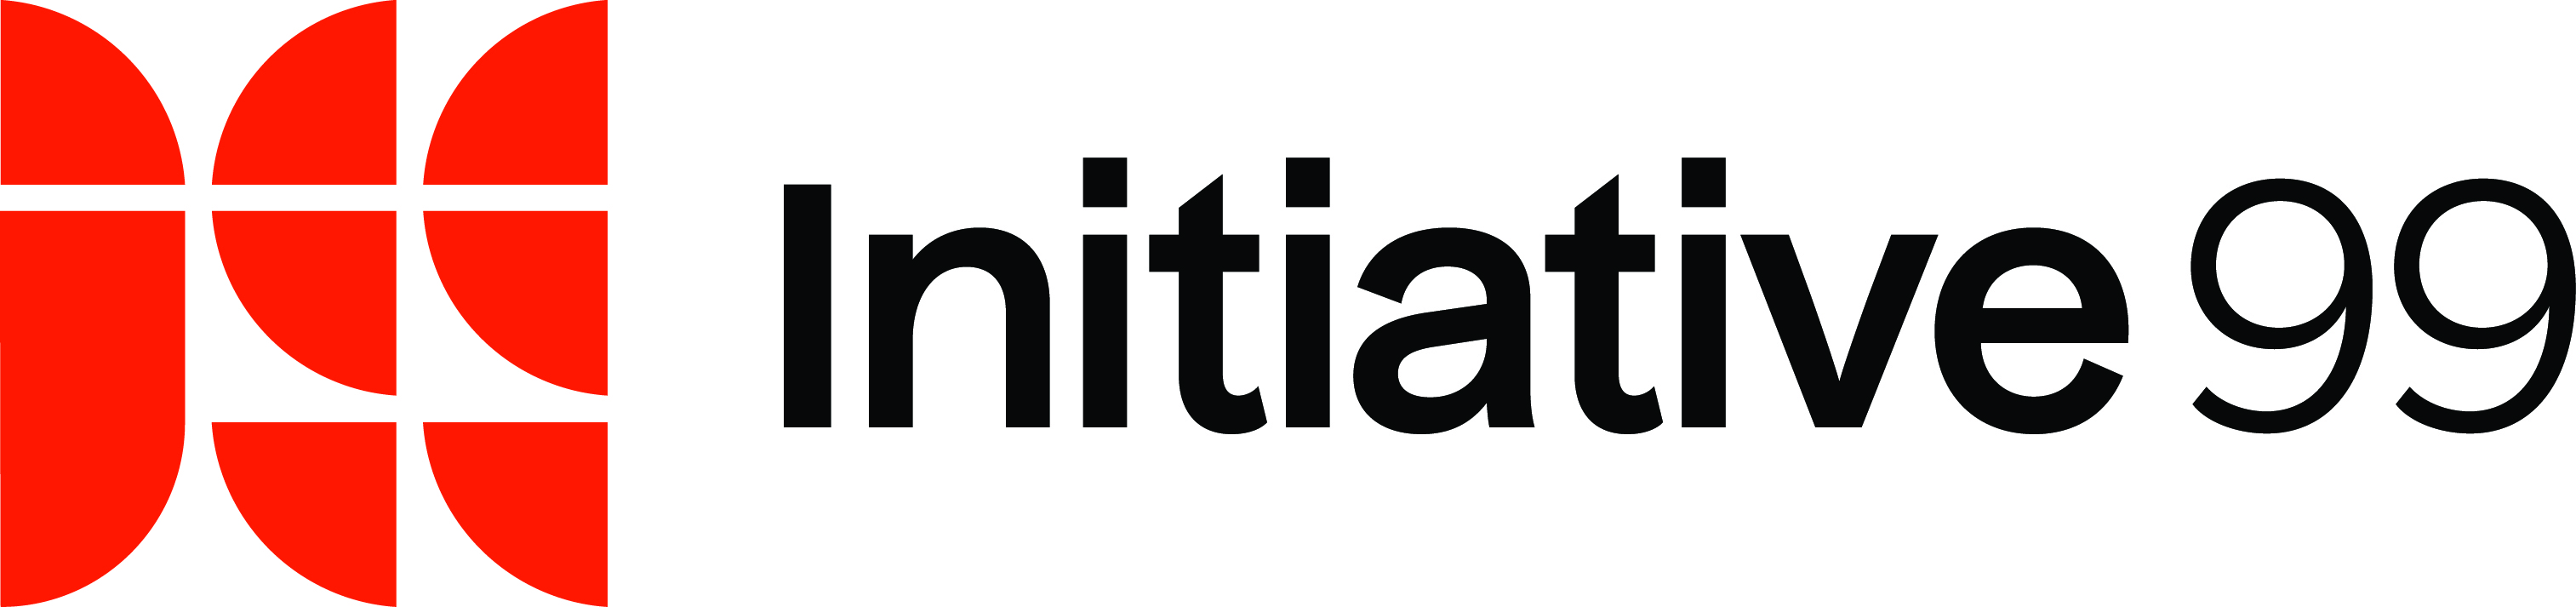 Initiative 99 logo